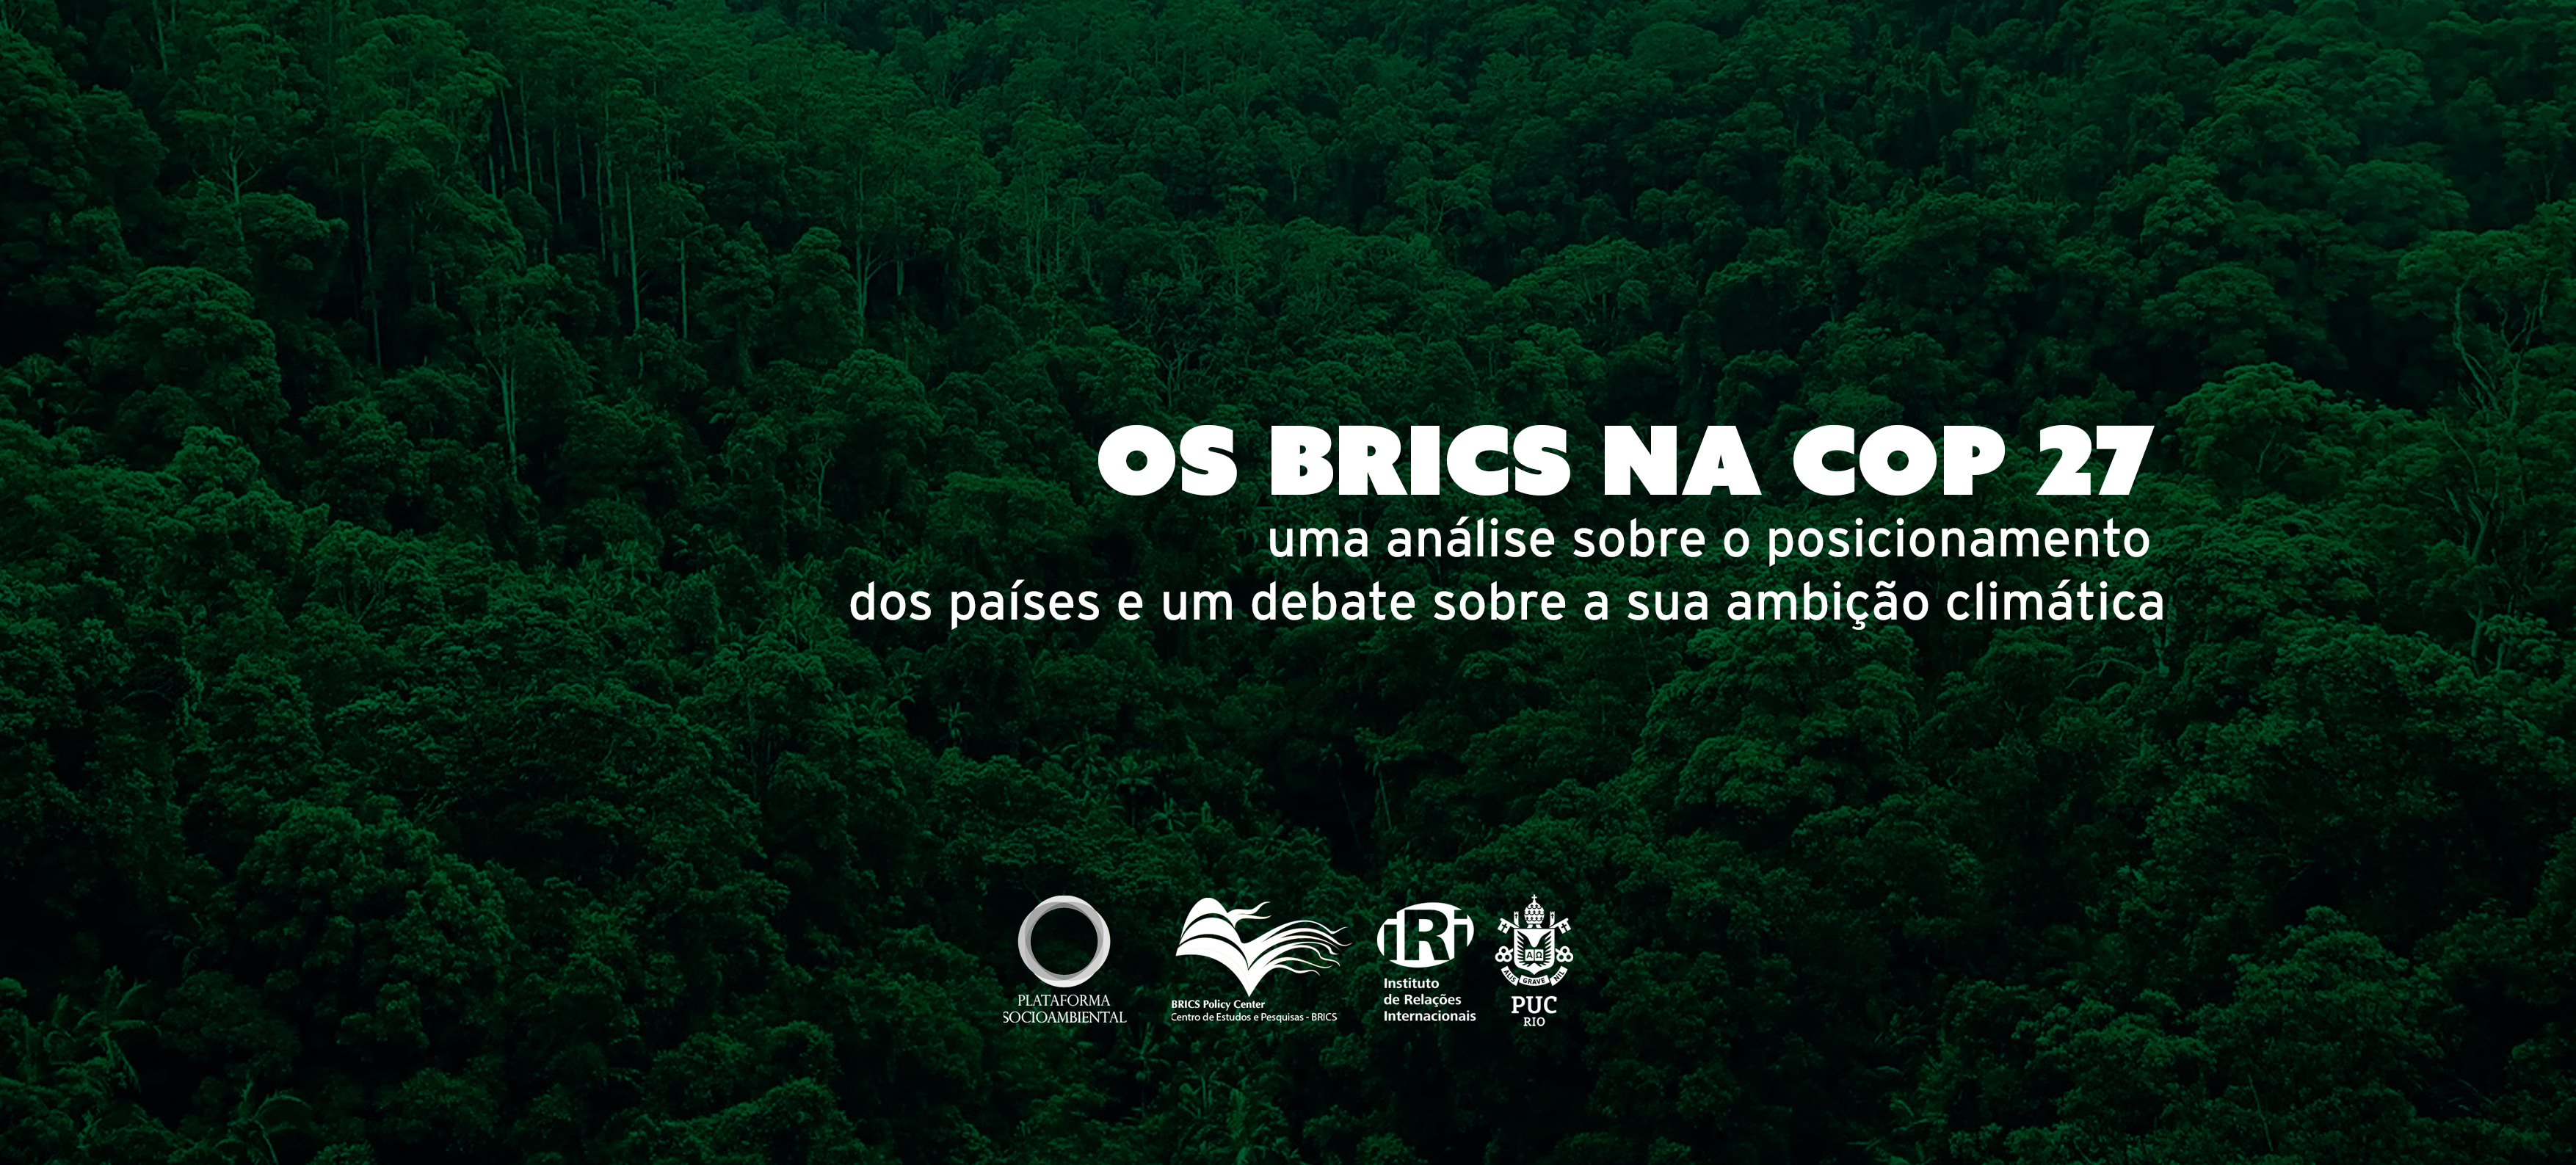 Os BRICS na COP 27: uma análise sobre o posicionamento dos países e um debate sobre a sua ambição climática